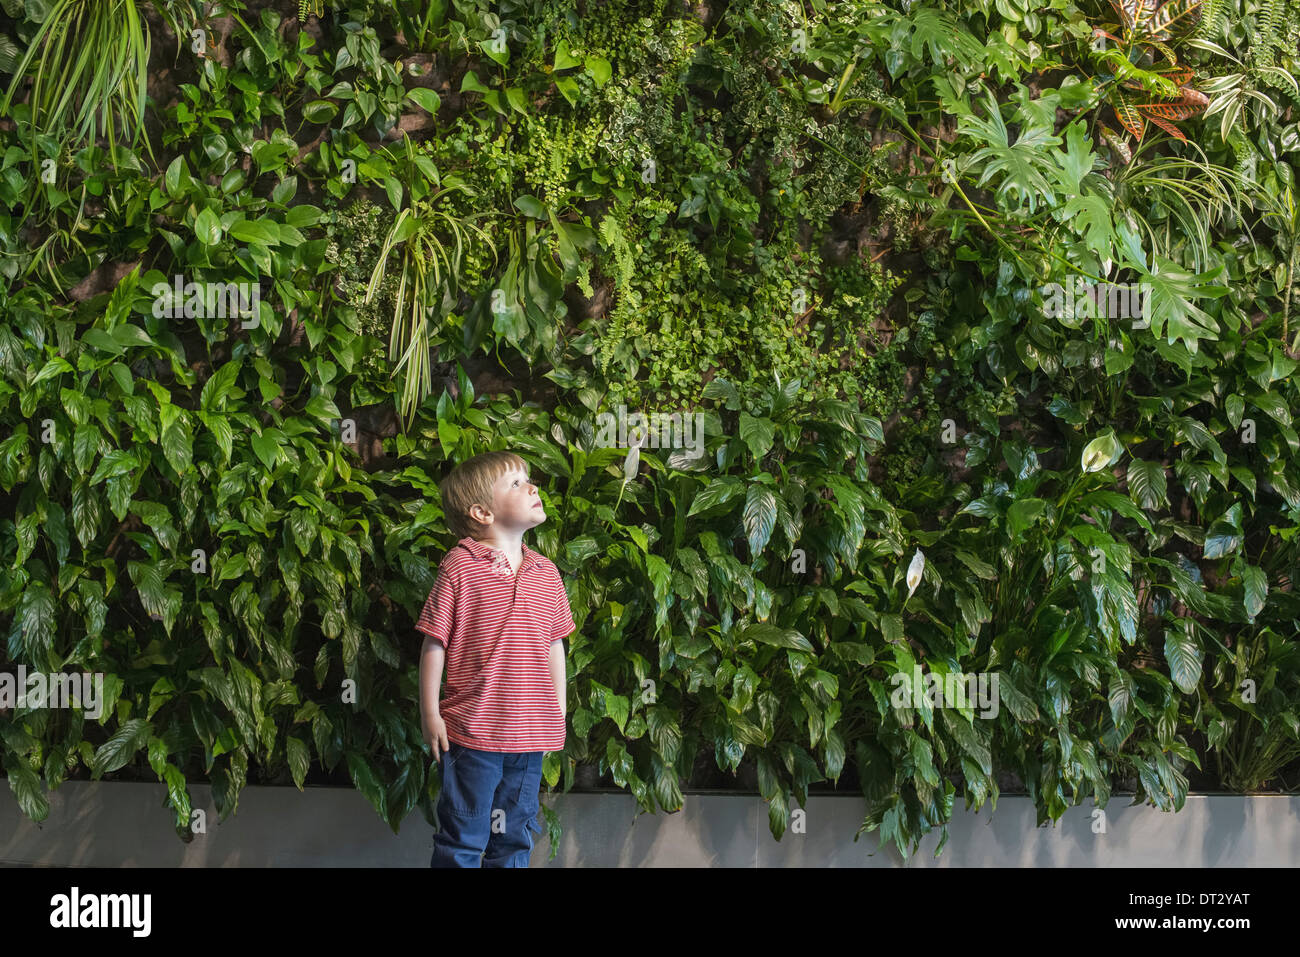 Città in primavera un stile di vita urbano di un giovane ragazzo in cerca fino ad una parete ricoperta con piante lussureggianti felci e luminose foglie verdi Foto Stock